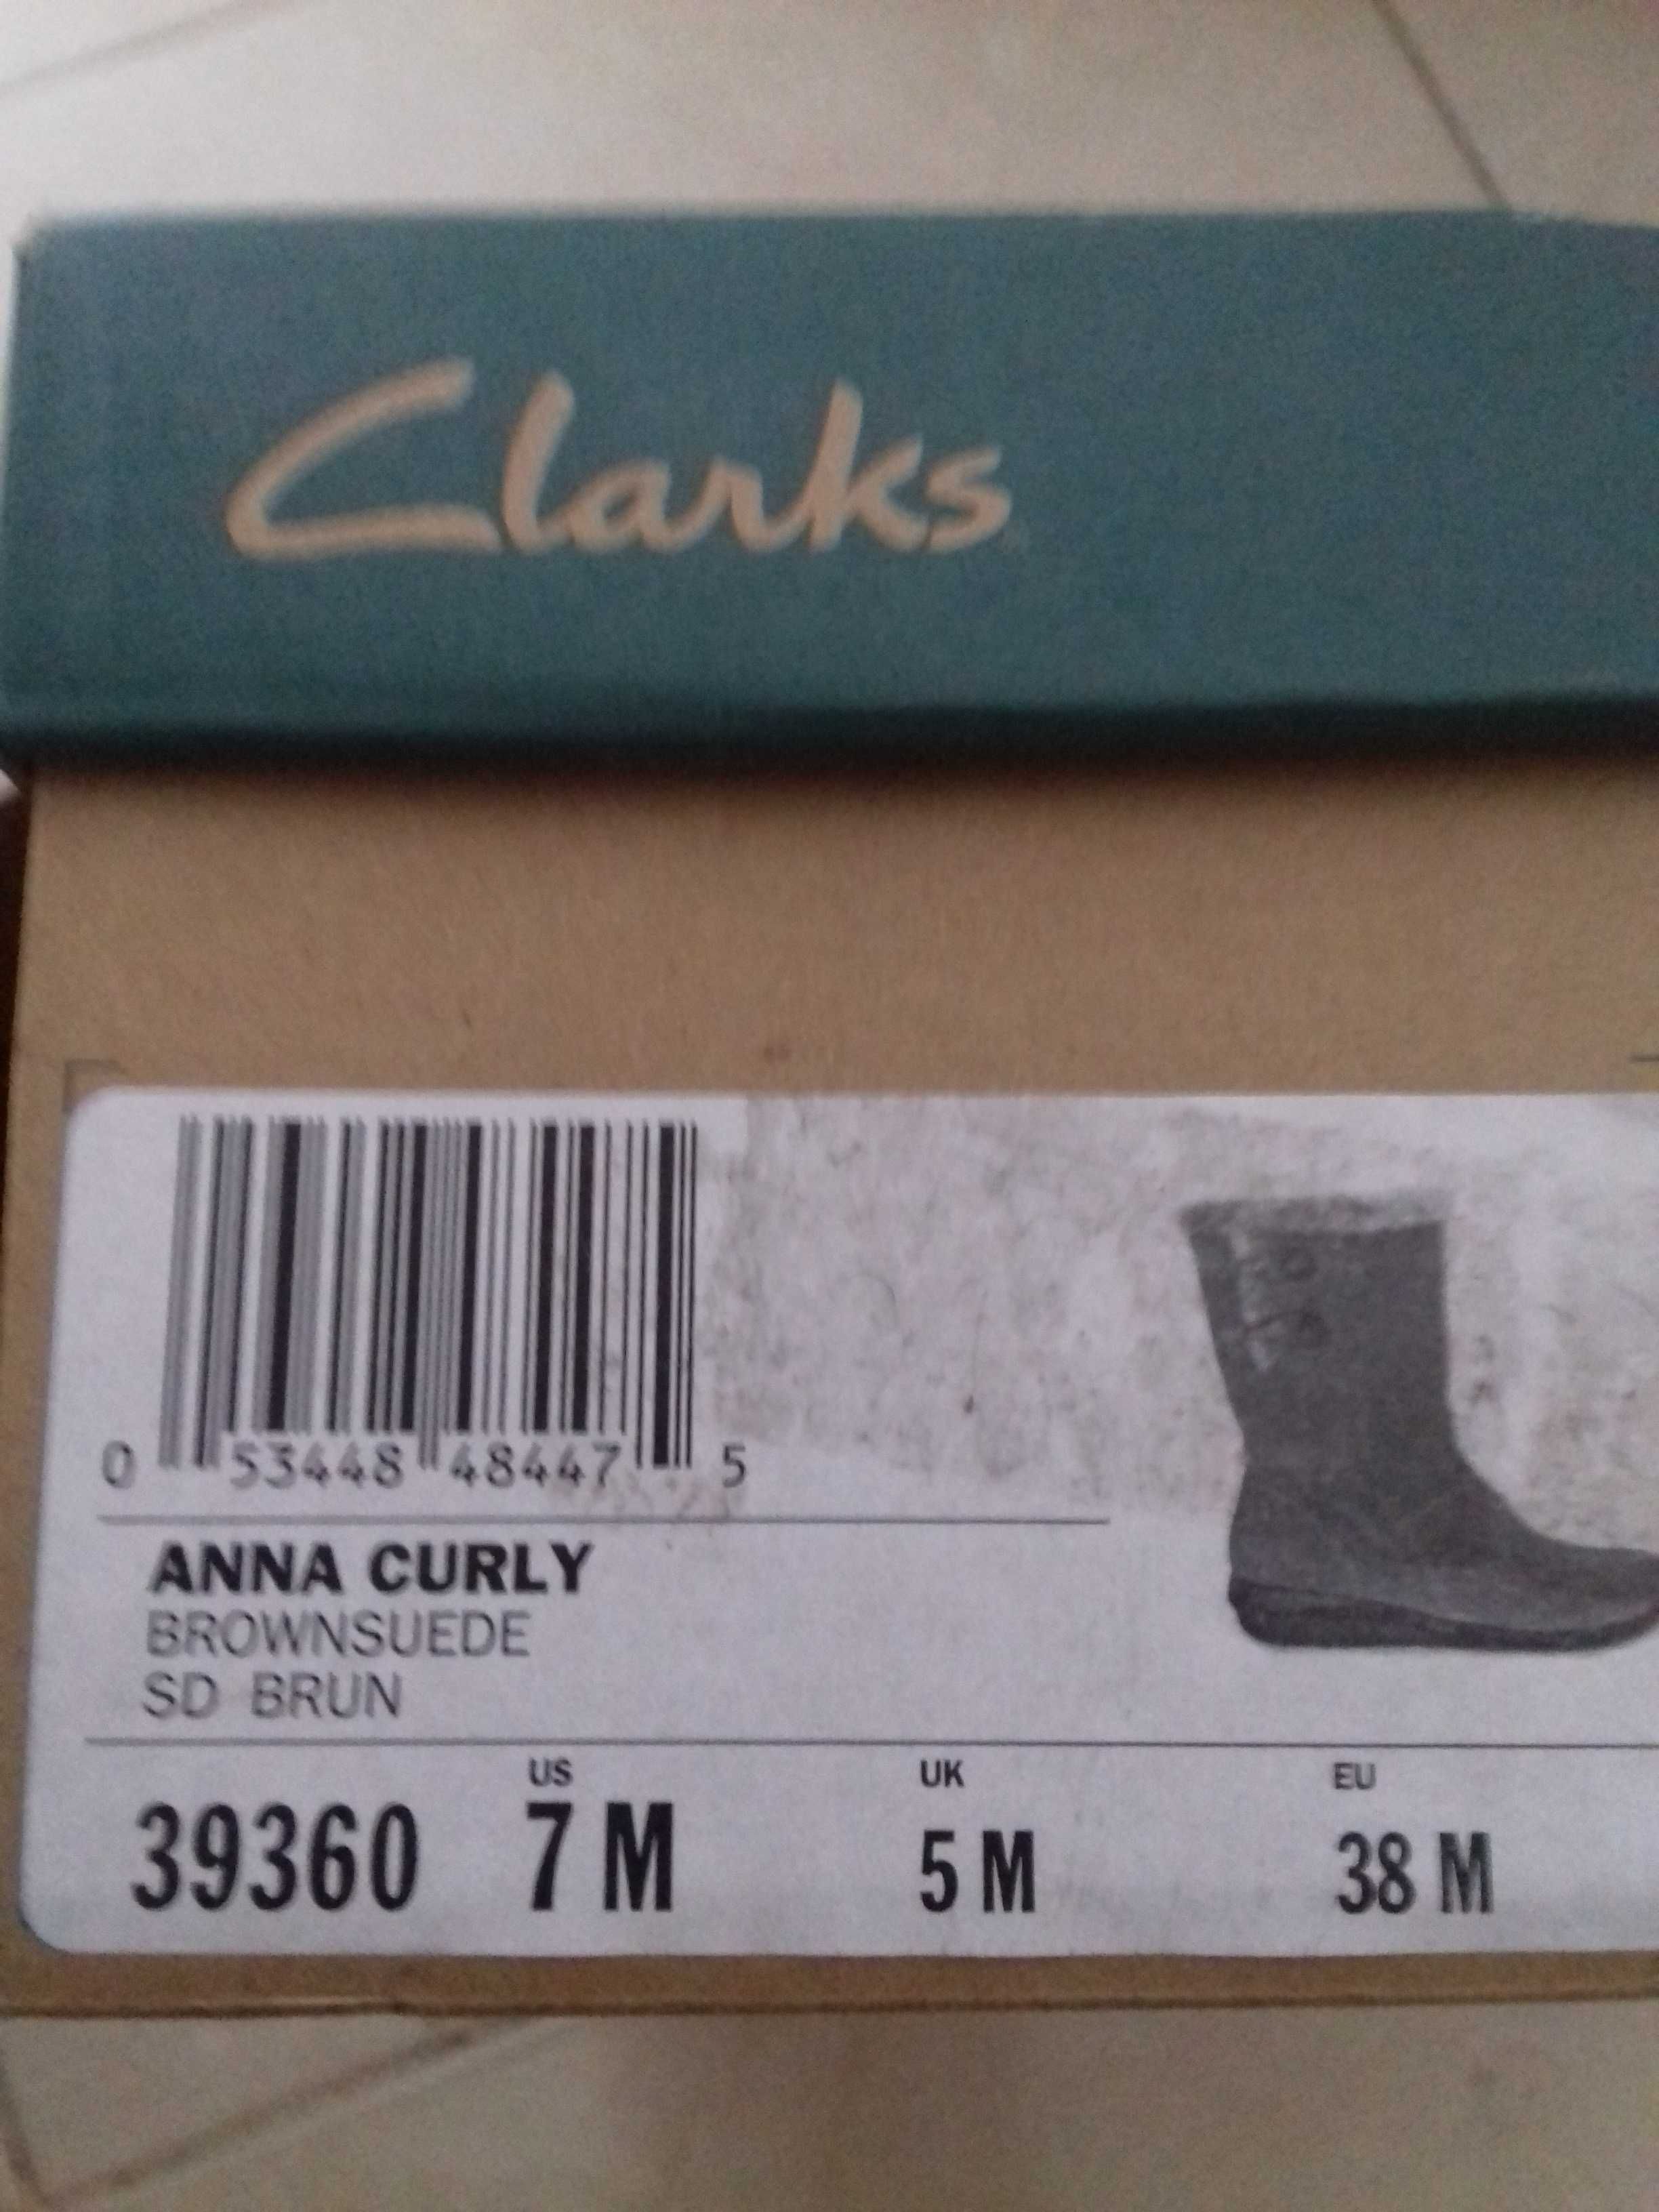 Новые тёмно-коричневые женские замшевые сапоги Clarks Anna Curly 39360